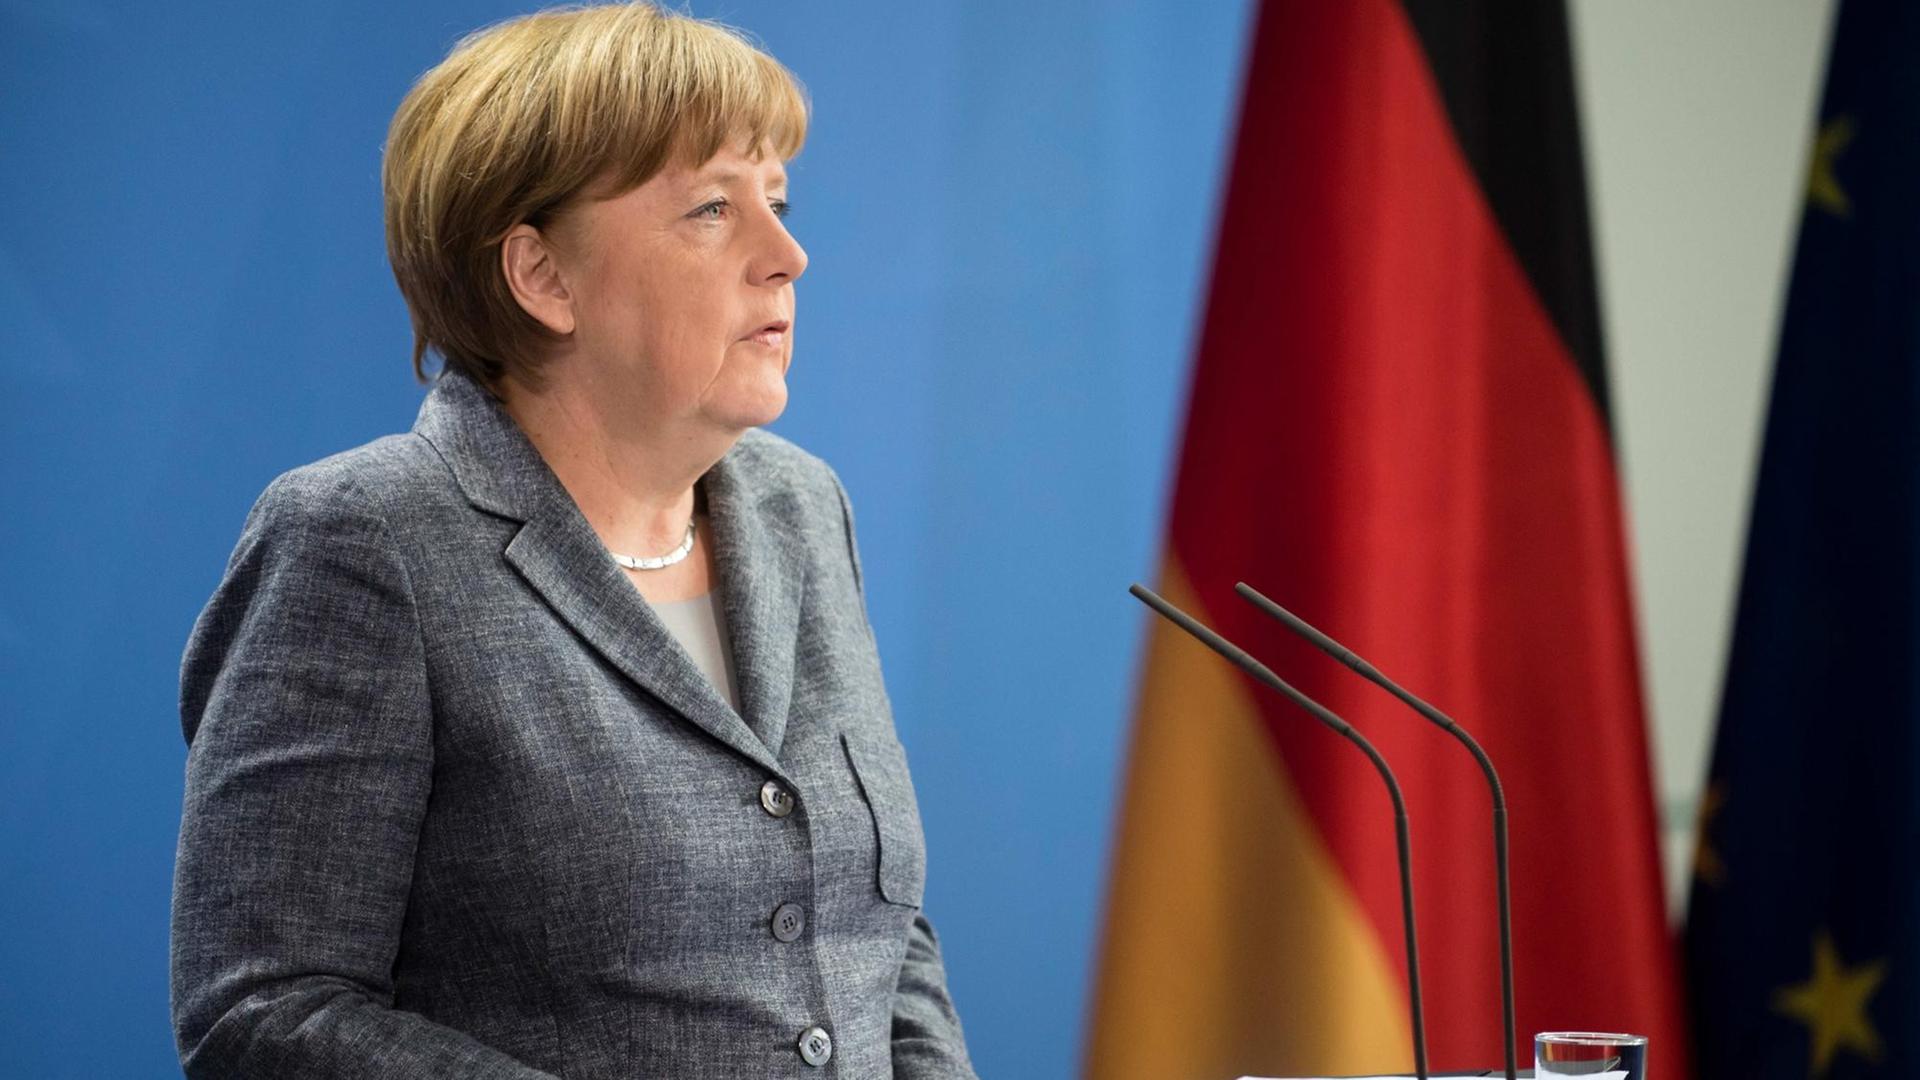 Bundeskanzlerin Angela Merkel gibt am 15.04.2016 in Berlin eine Erklärung zu der Affäre um den TV-Moderator Jan Böhmermann ab.